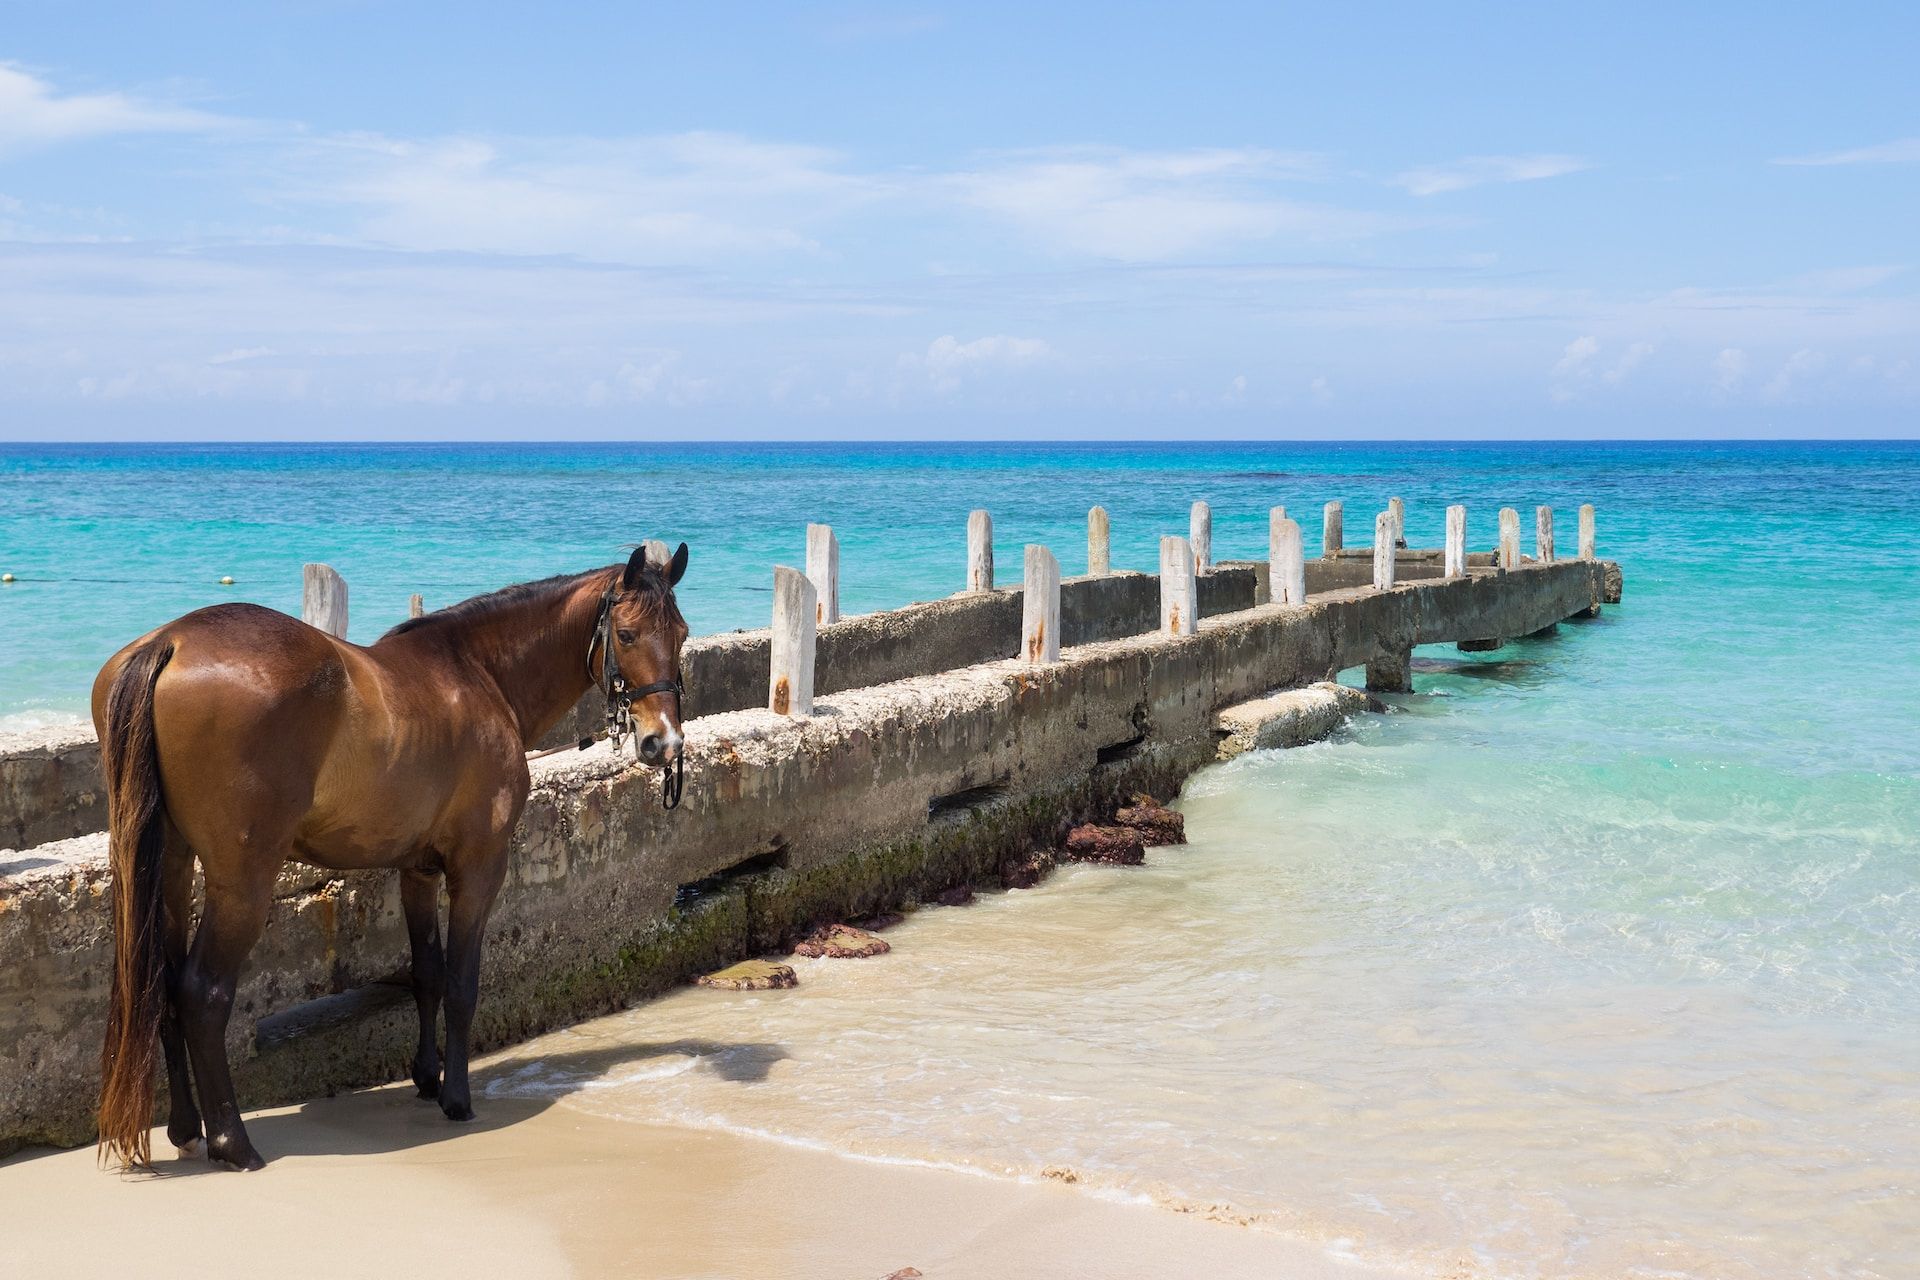 A horse on a beach in Jamaica